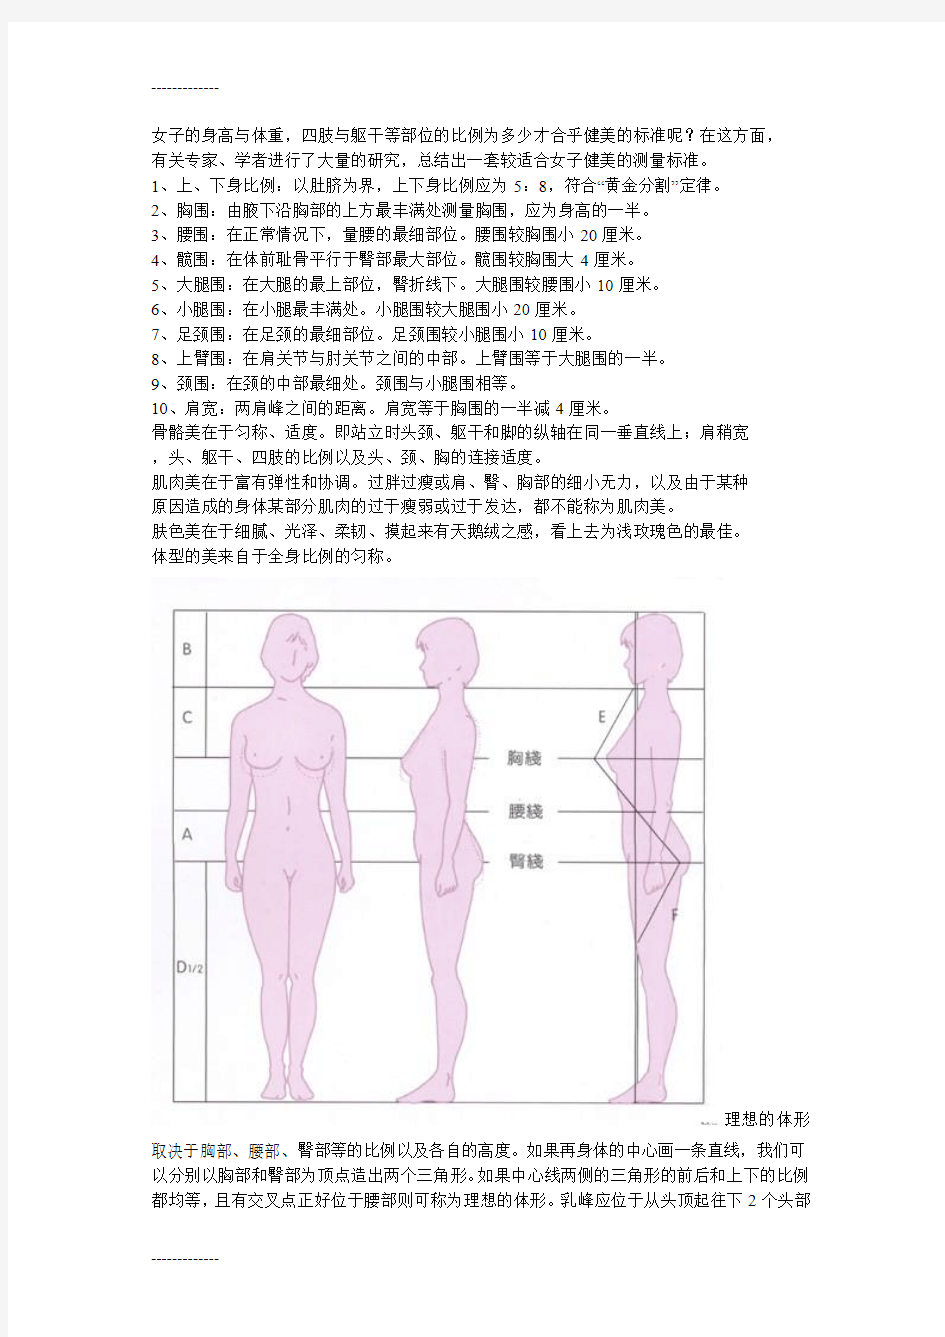 (整理)女性标准身材比例对照表